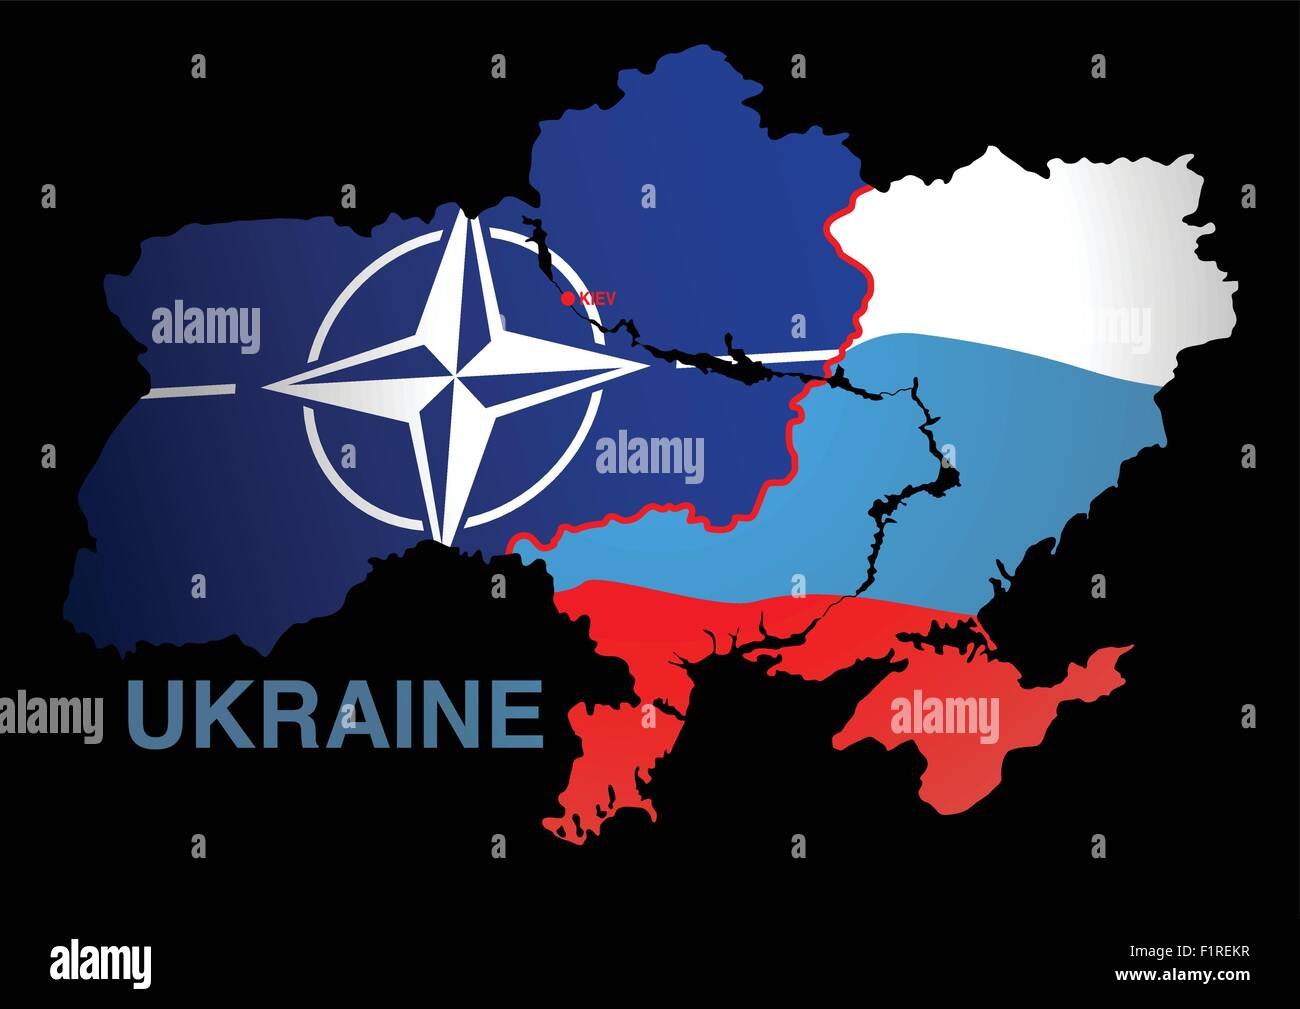 Nga-NATO-Ukraine: Ngoại giao nhiều, thành quả ít - Ảnh 1.